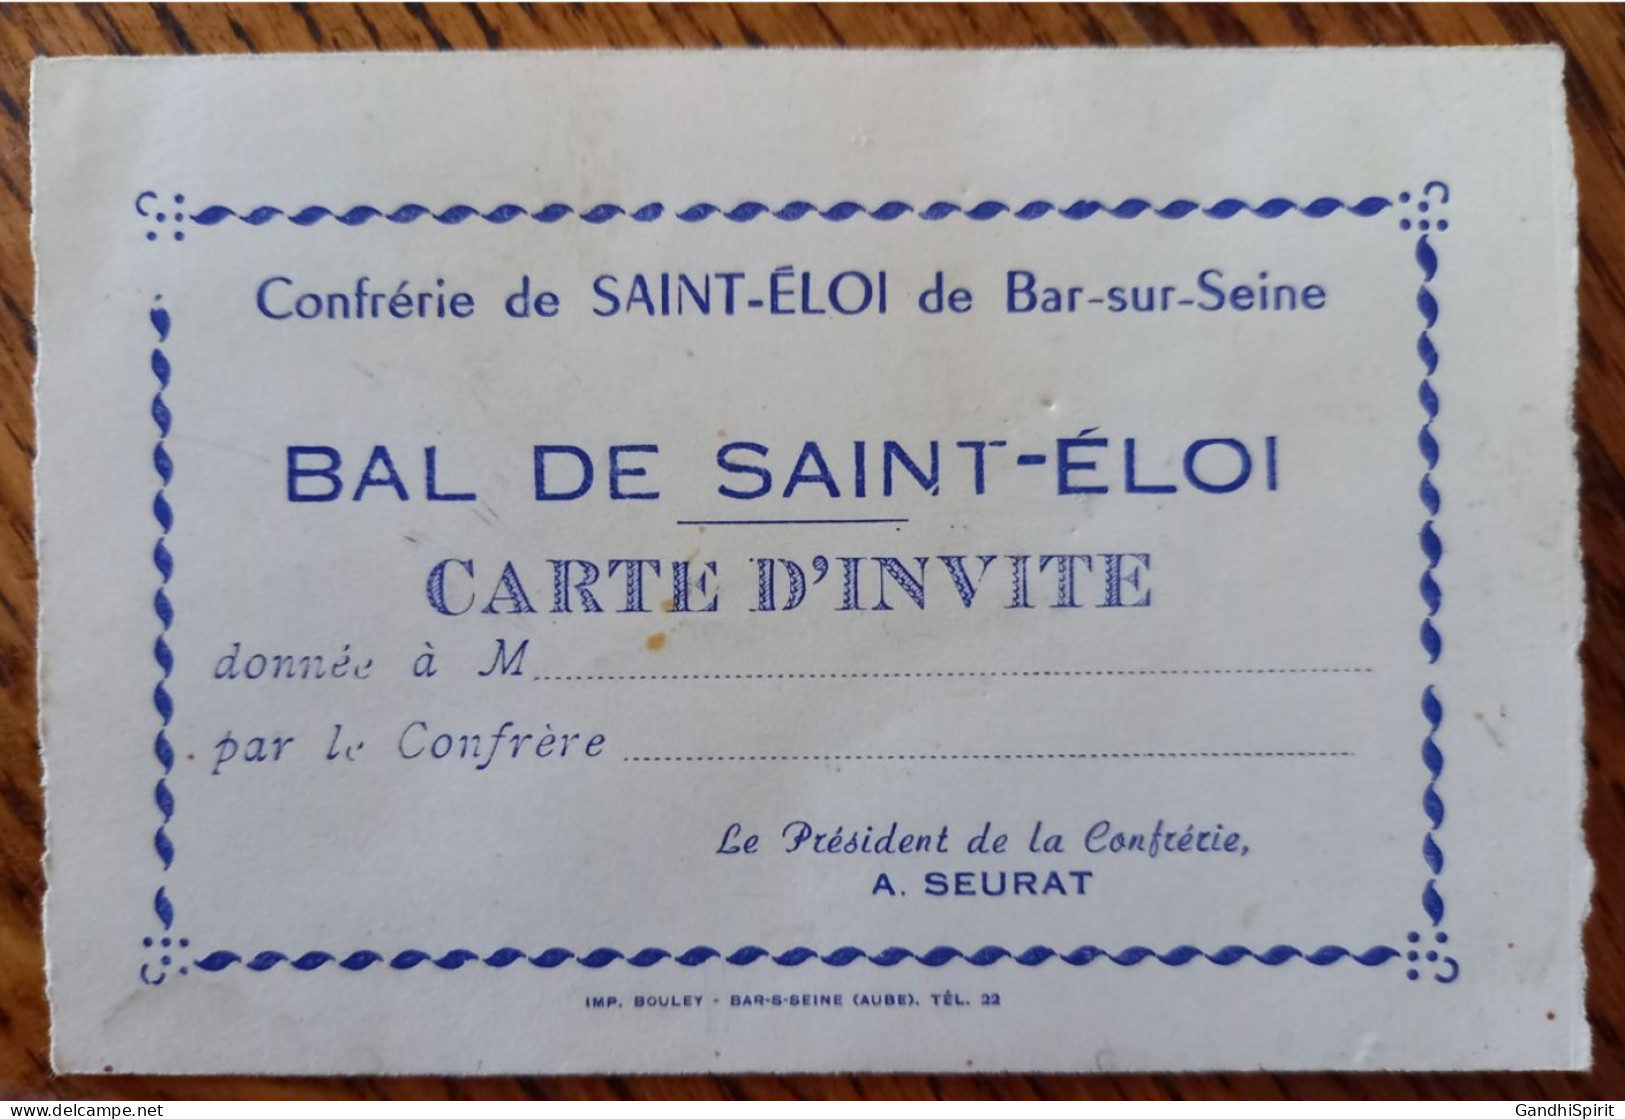 Bar Sur Seine - Confrérie De Saint Eloi - Carte D'Invité Au Bal De Saint Eloi - A. Seurat Président - Imprimerie Bouley - Bar-sur-Seine